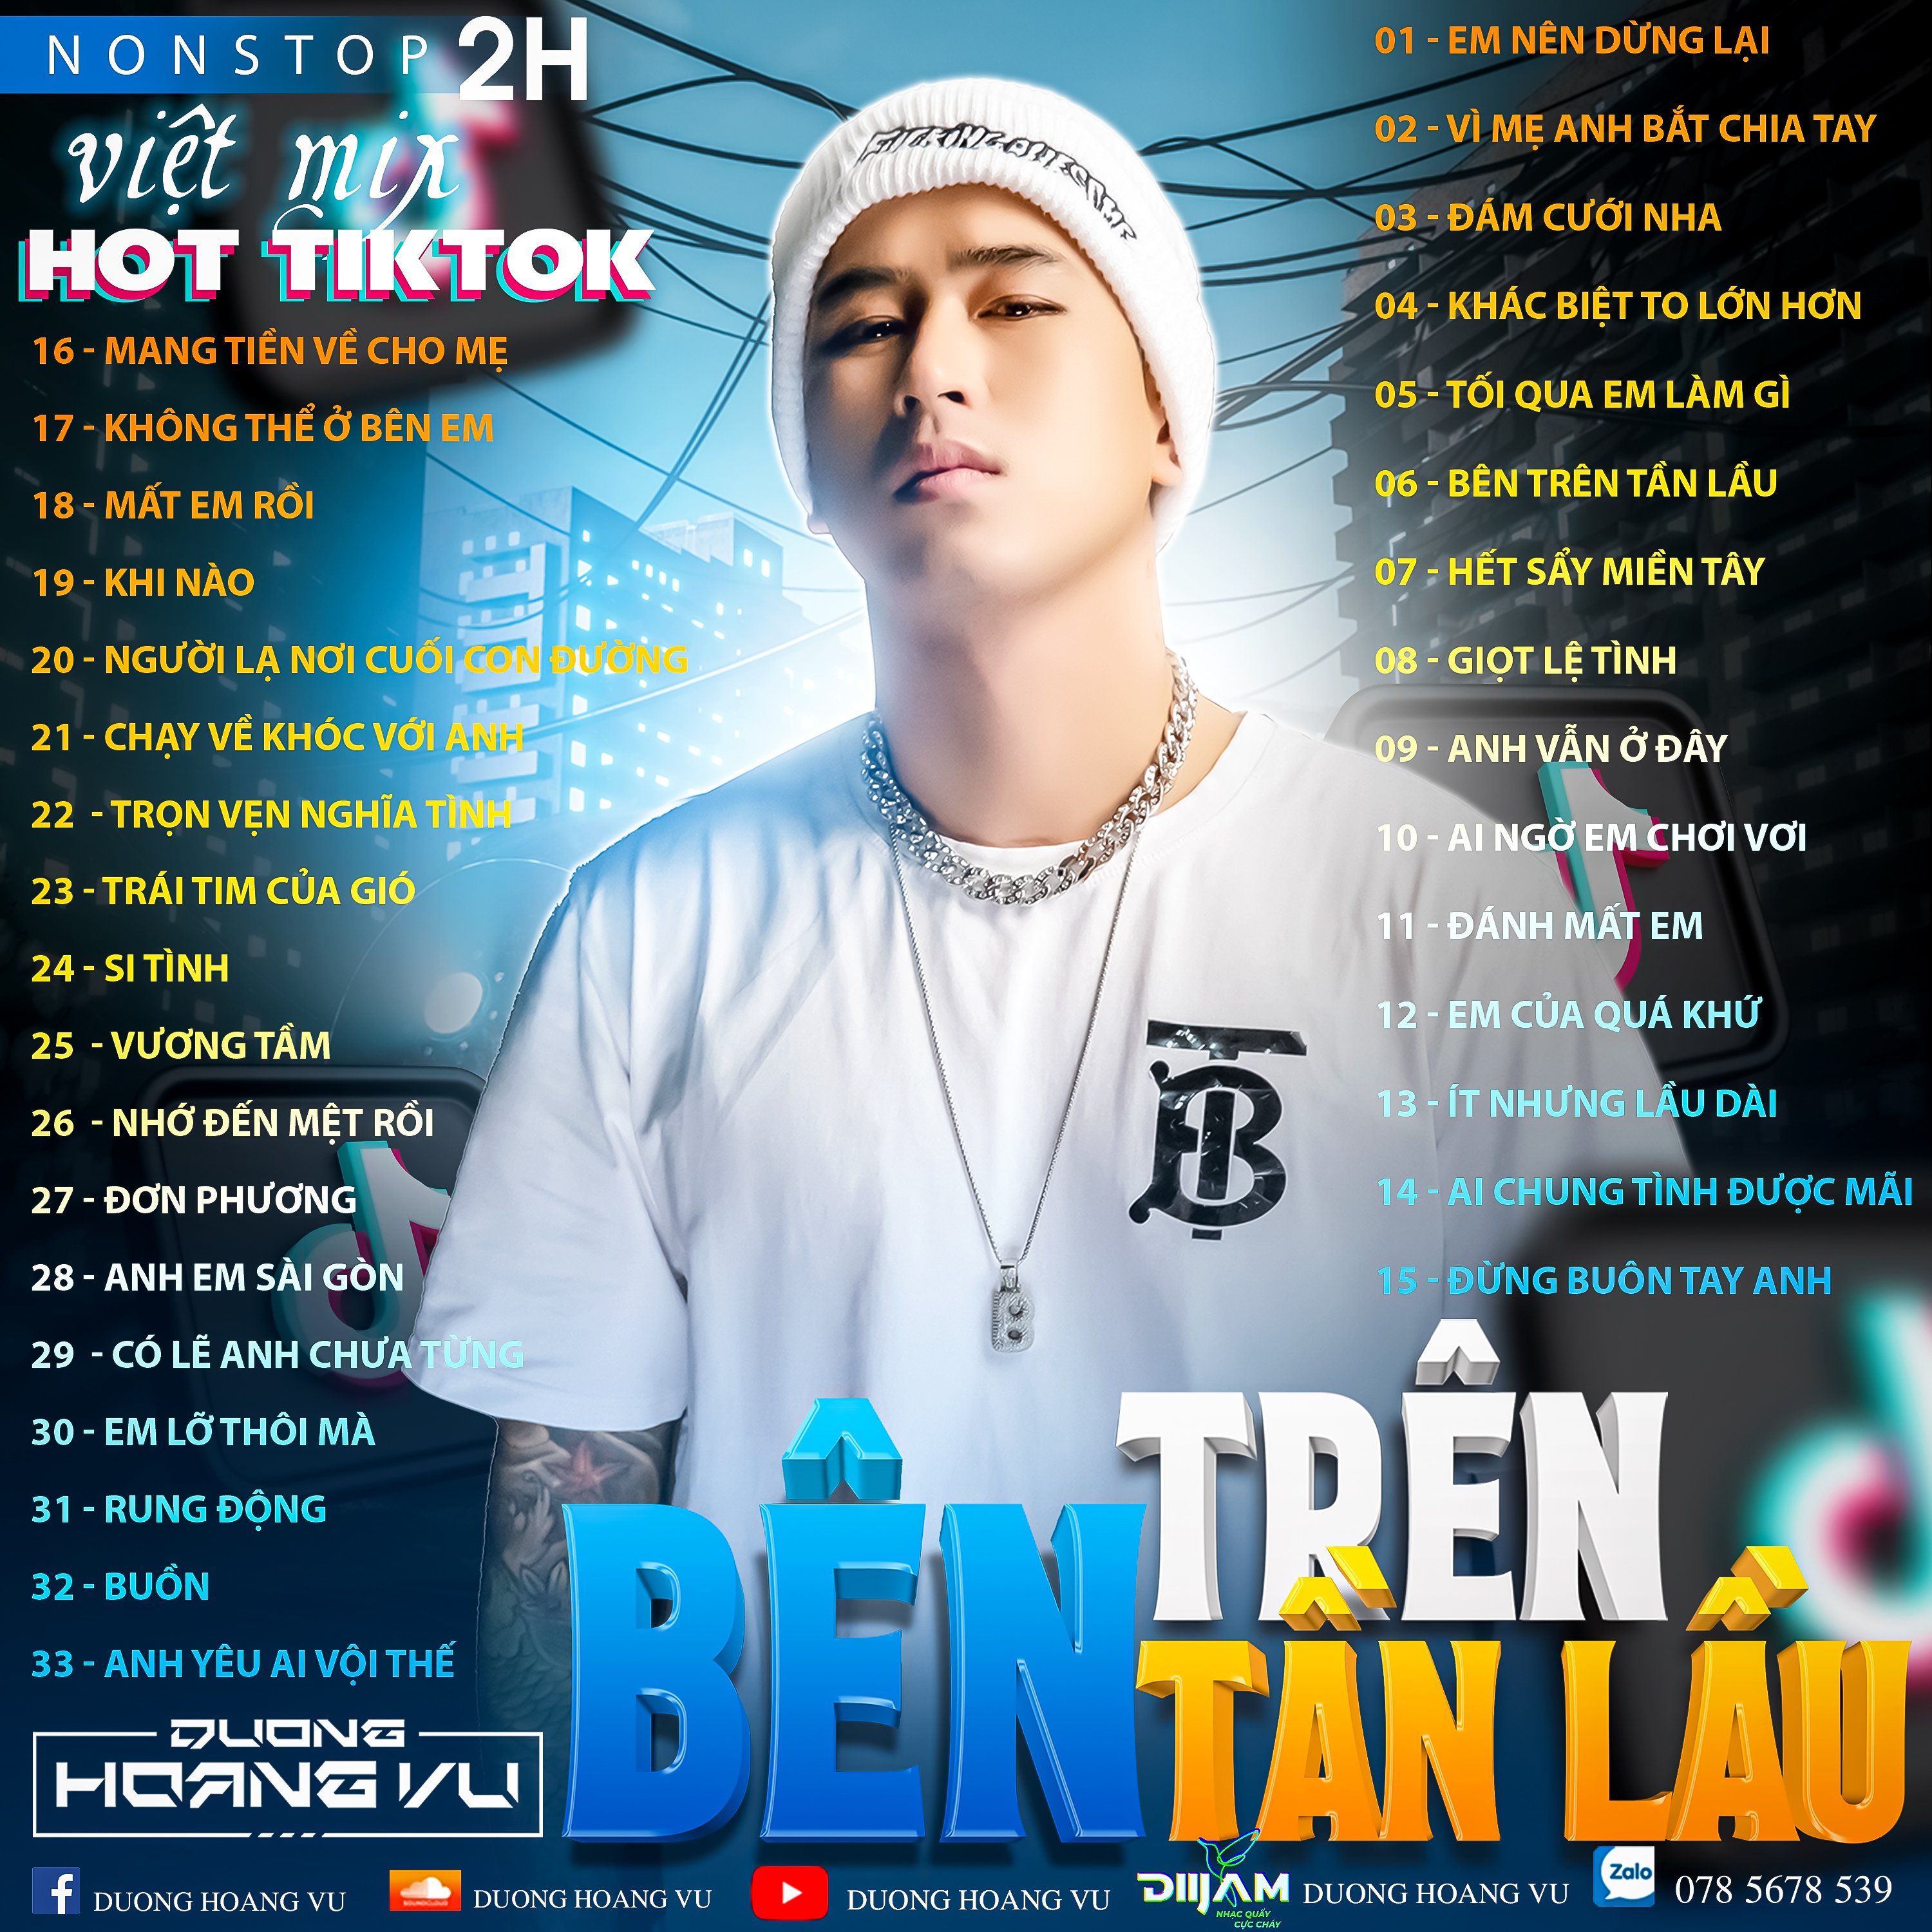 Íoslódáil (Demo ) Nst Việt Mix Hot tiktok 2h - 2022 - DJ Dương Hoàng Vũ Mix Mua Full IB Zalo 078.5678.539